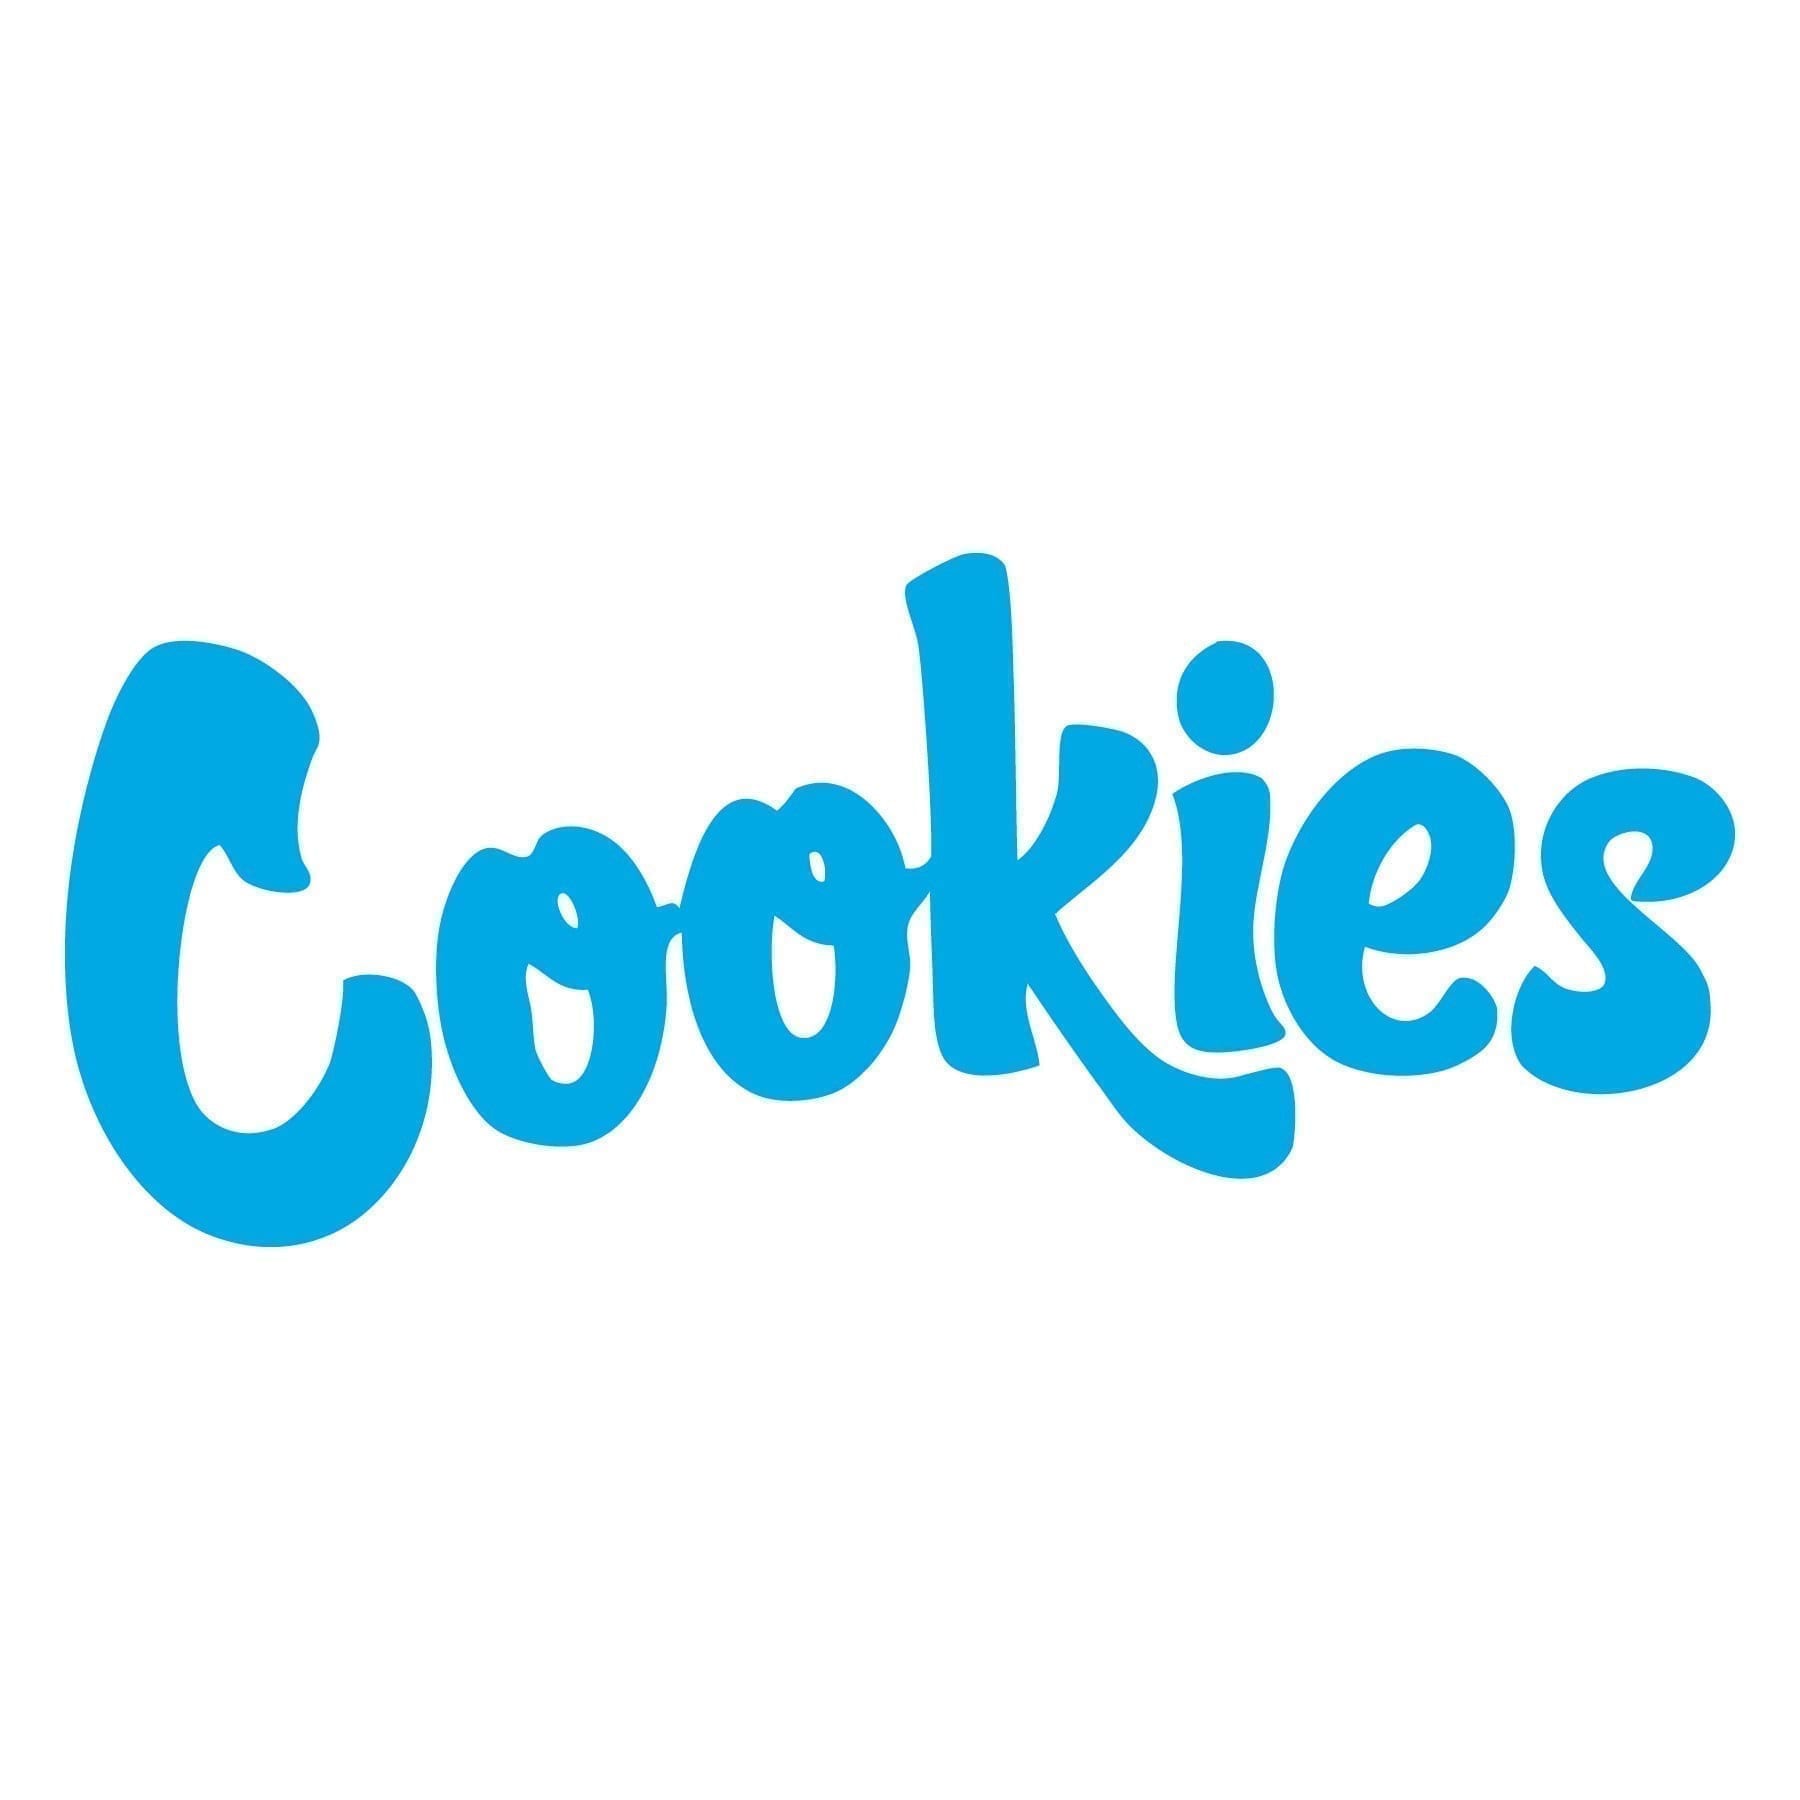 Cookies – Hollywood weed near me Weed Near Me cookies logo